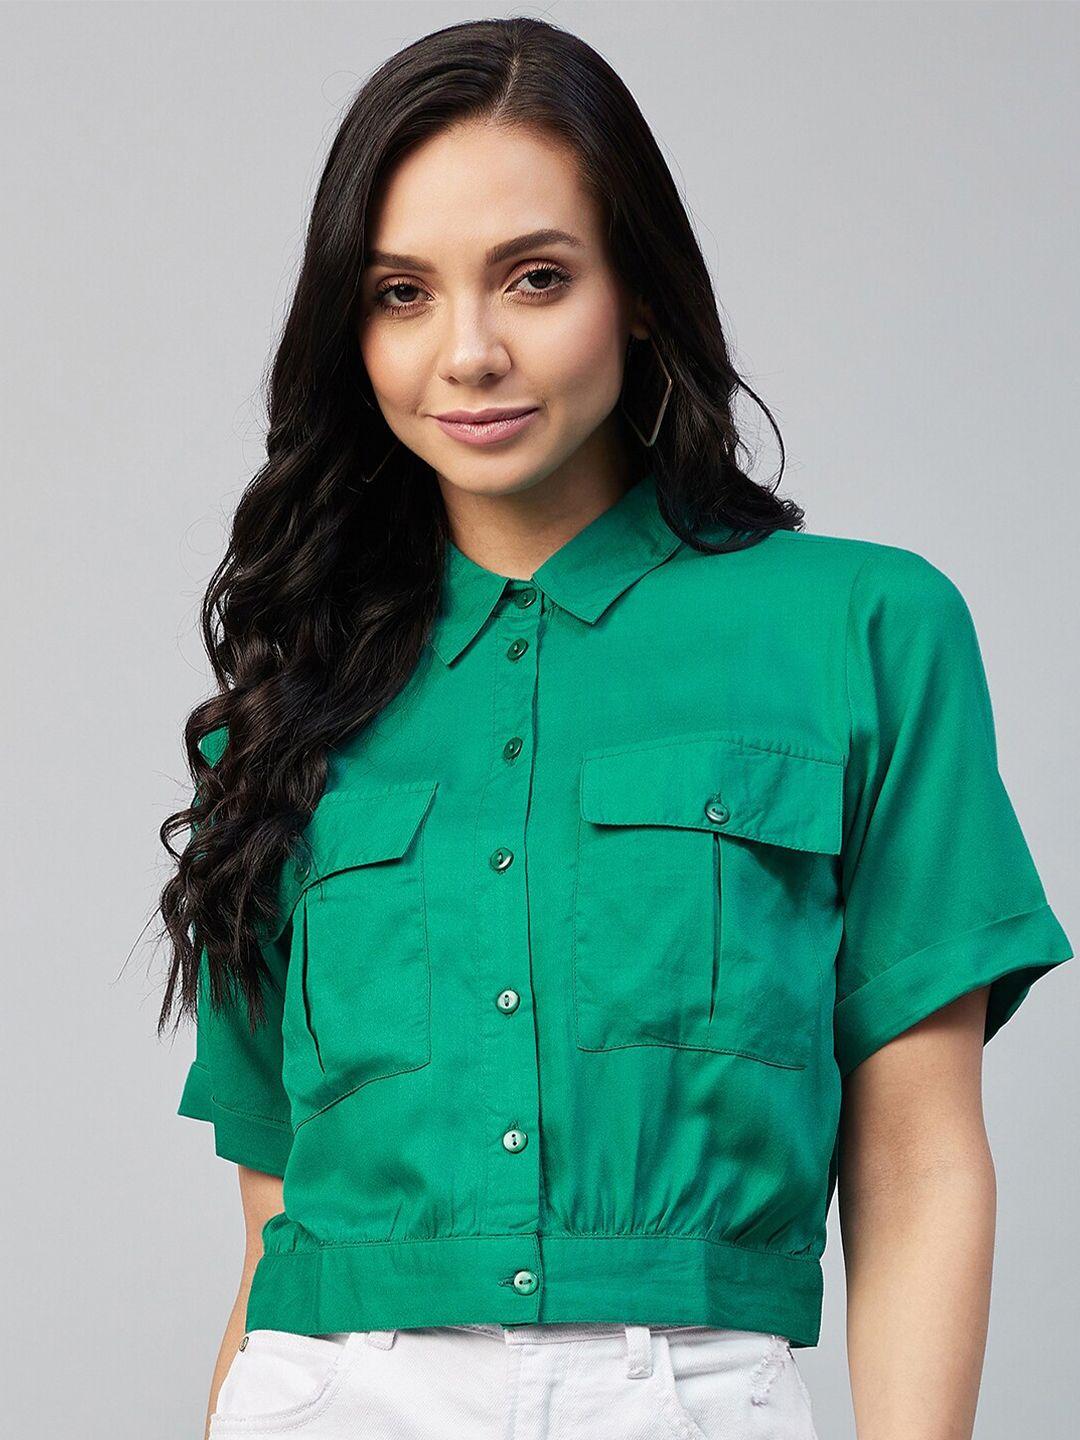 carlton-london-women-green-classic-opaque-casual-shirt